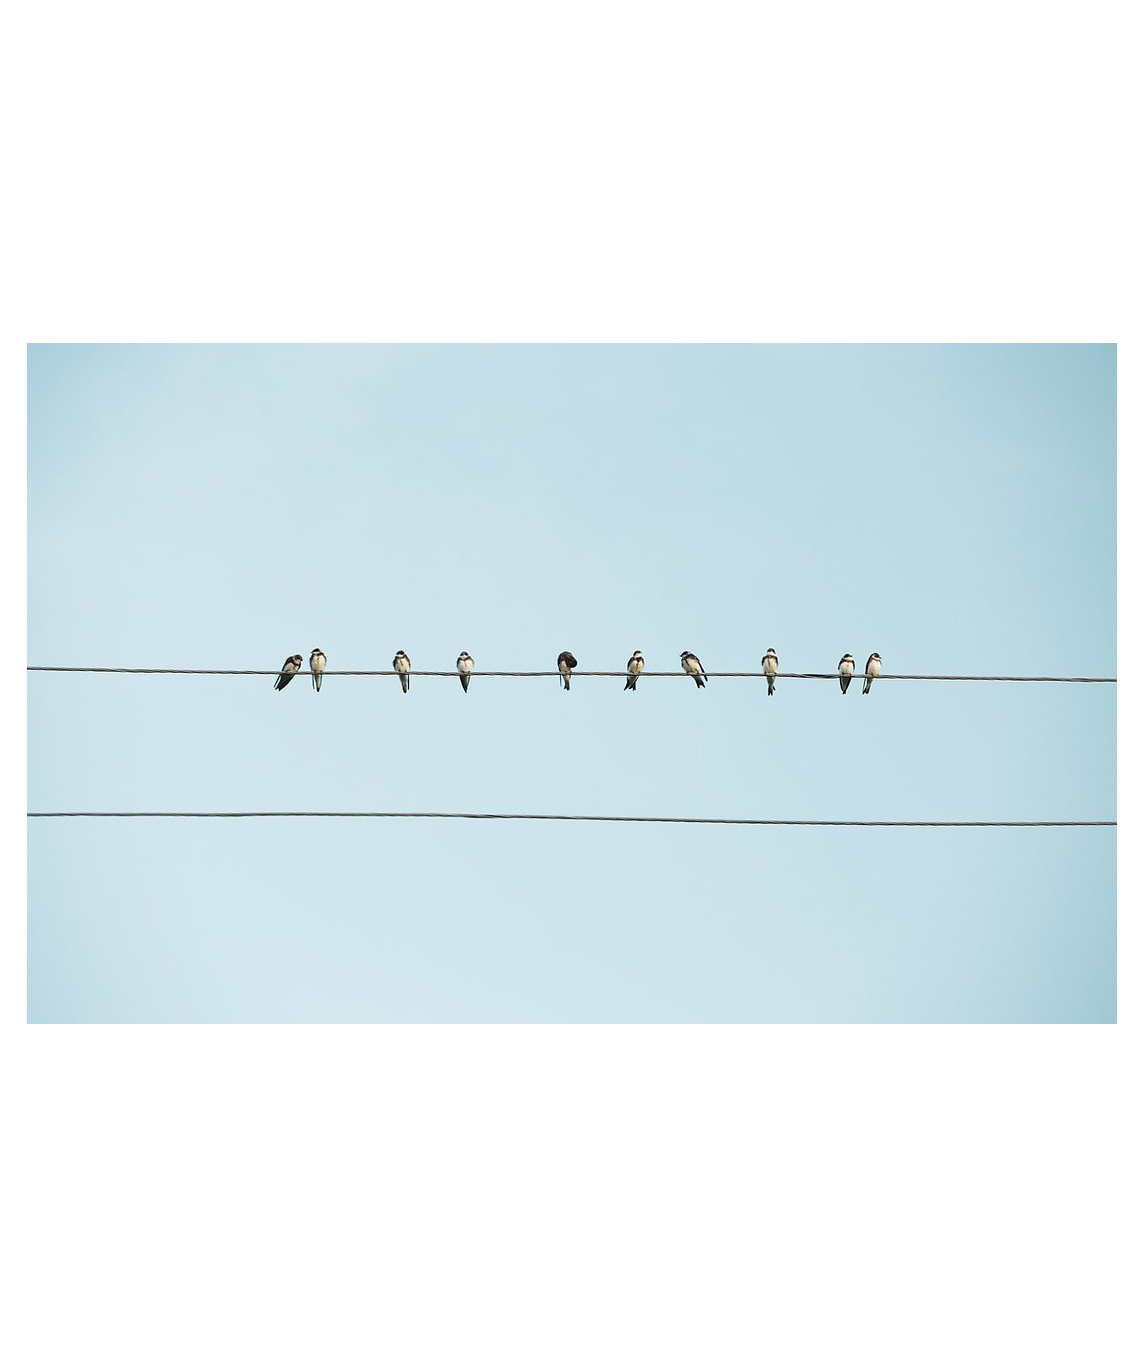 Նկար «Թռչունները մետաղալարերի վրա գյուղական Հայաստանում»